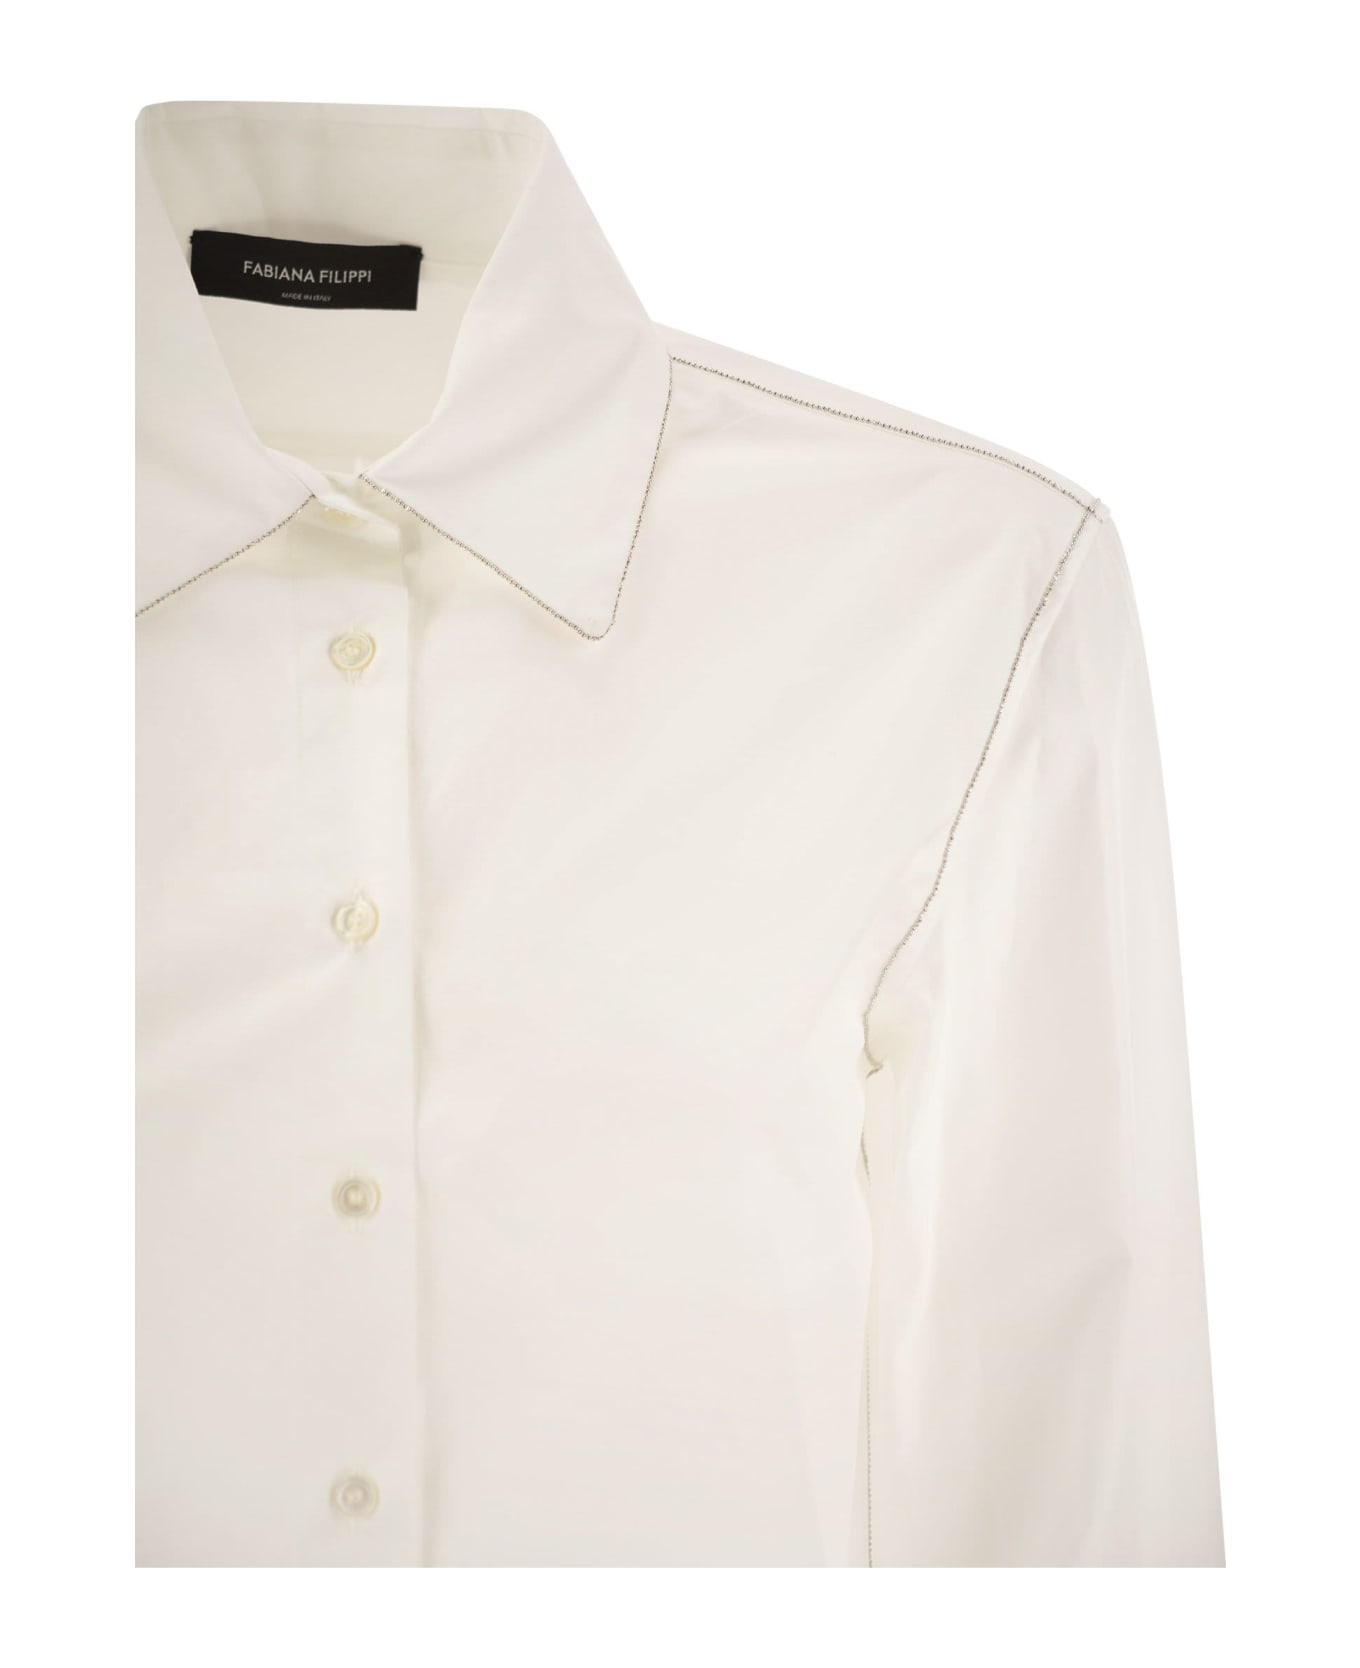 Fabiana Filippi Cotton Poplin Shirt - White シャツ